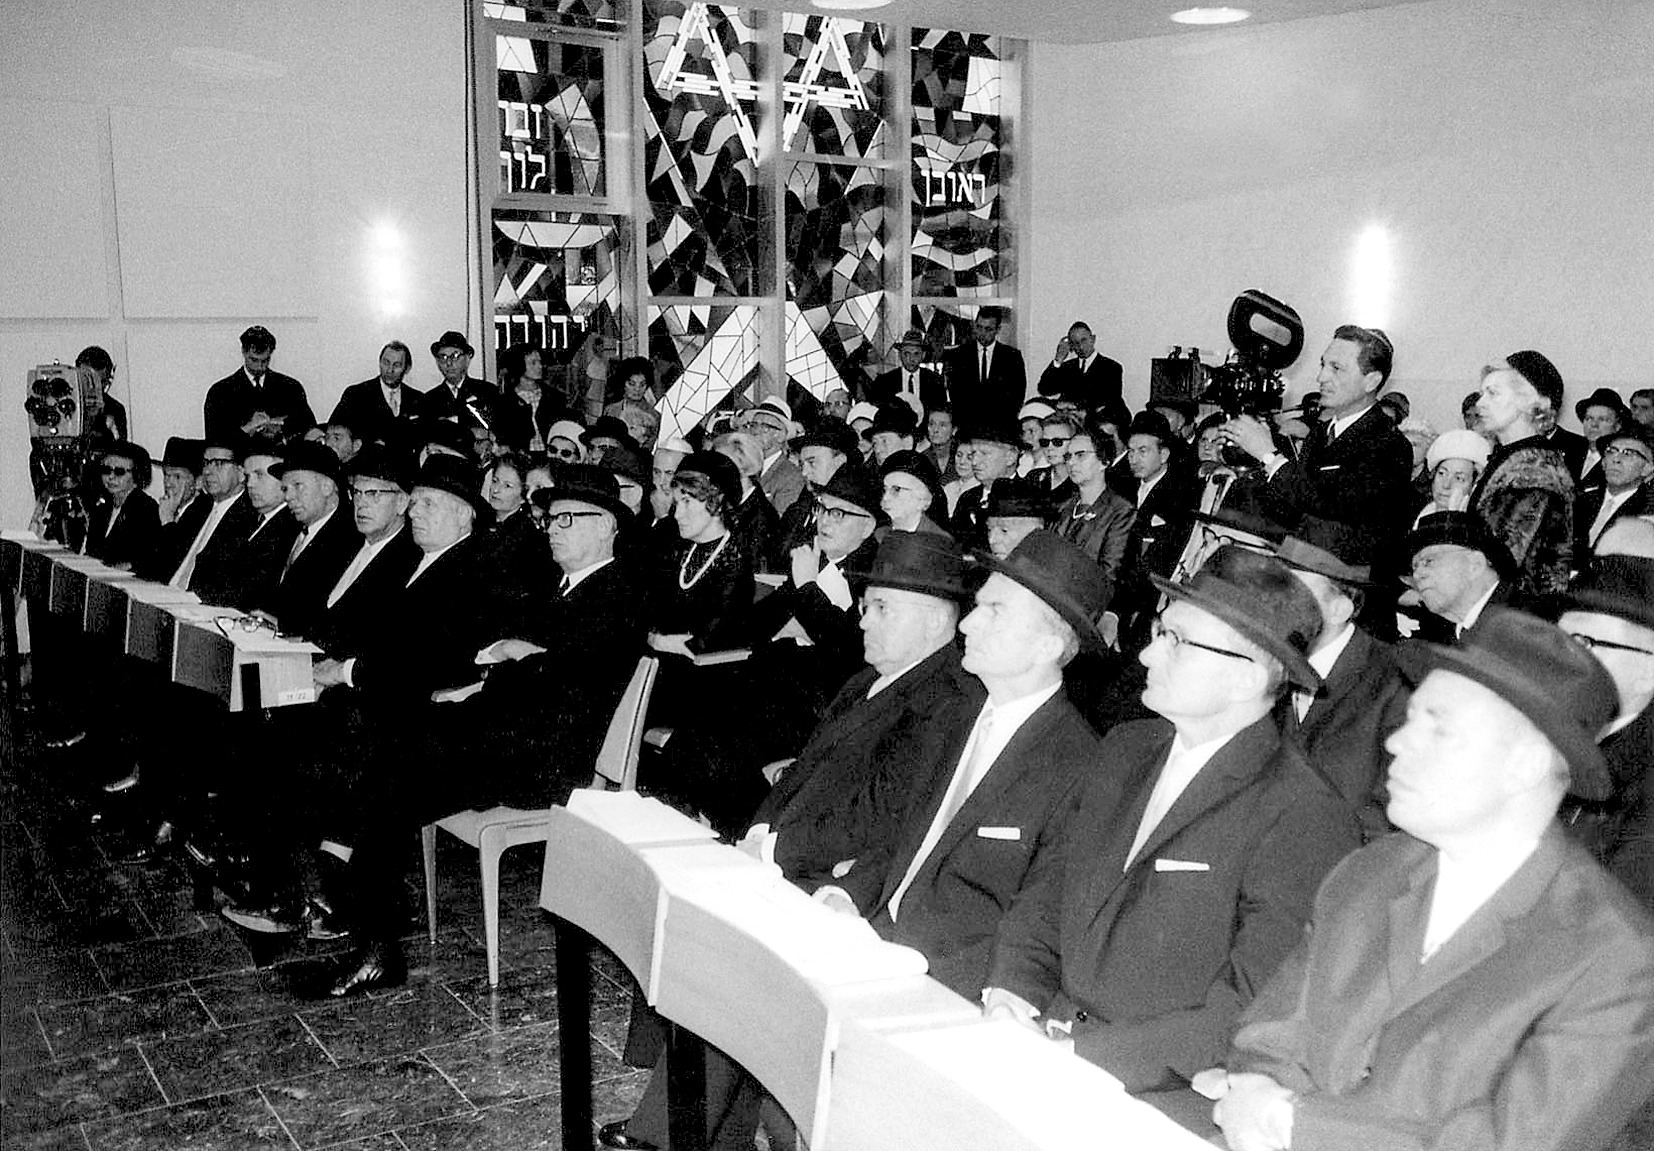 Торжественное открытие нового здания синагоги 11 сентября 1966 г. Фотограф: Адольф Диамант. Коллекция Адольфа Диаманта